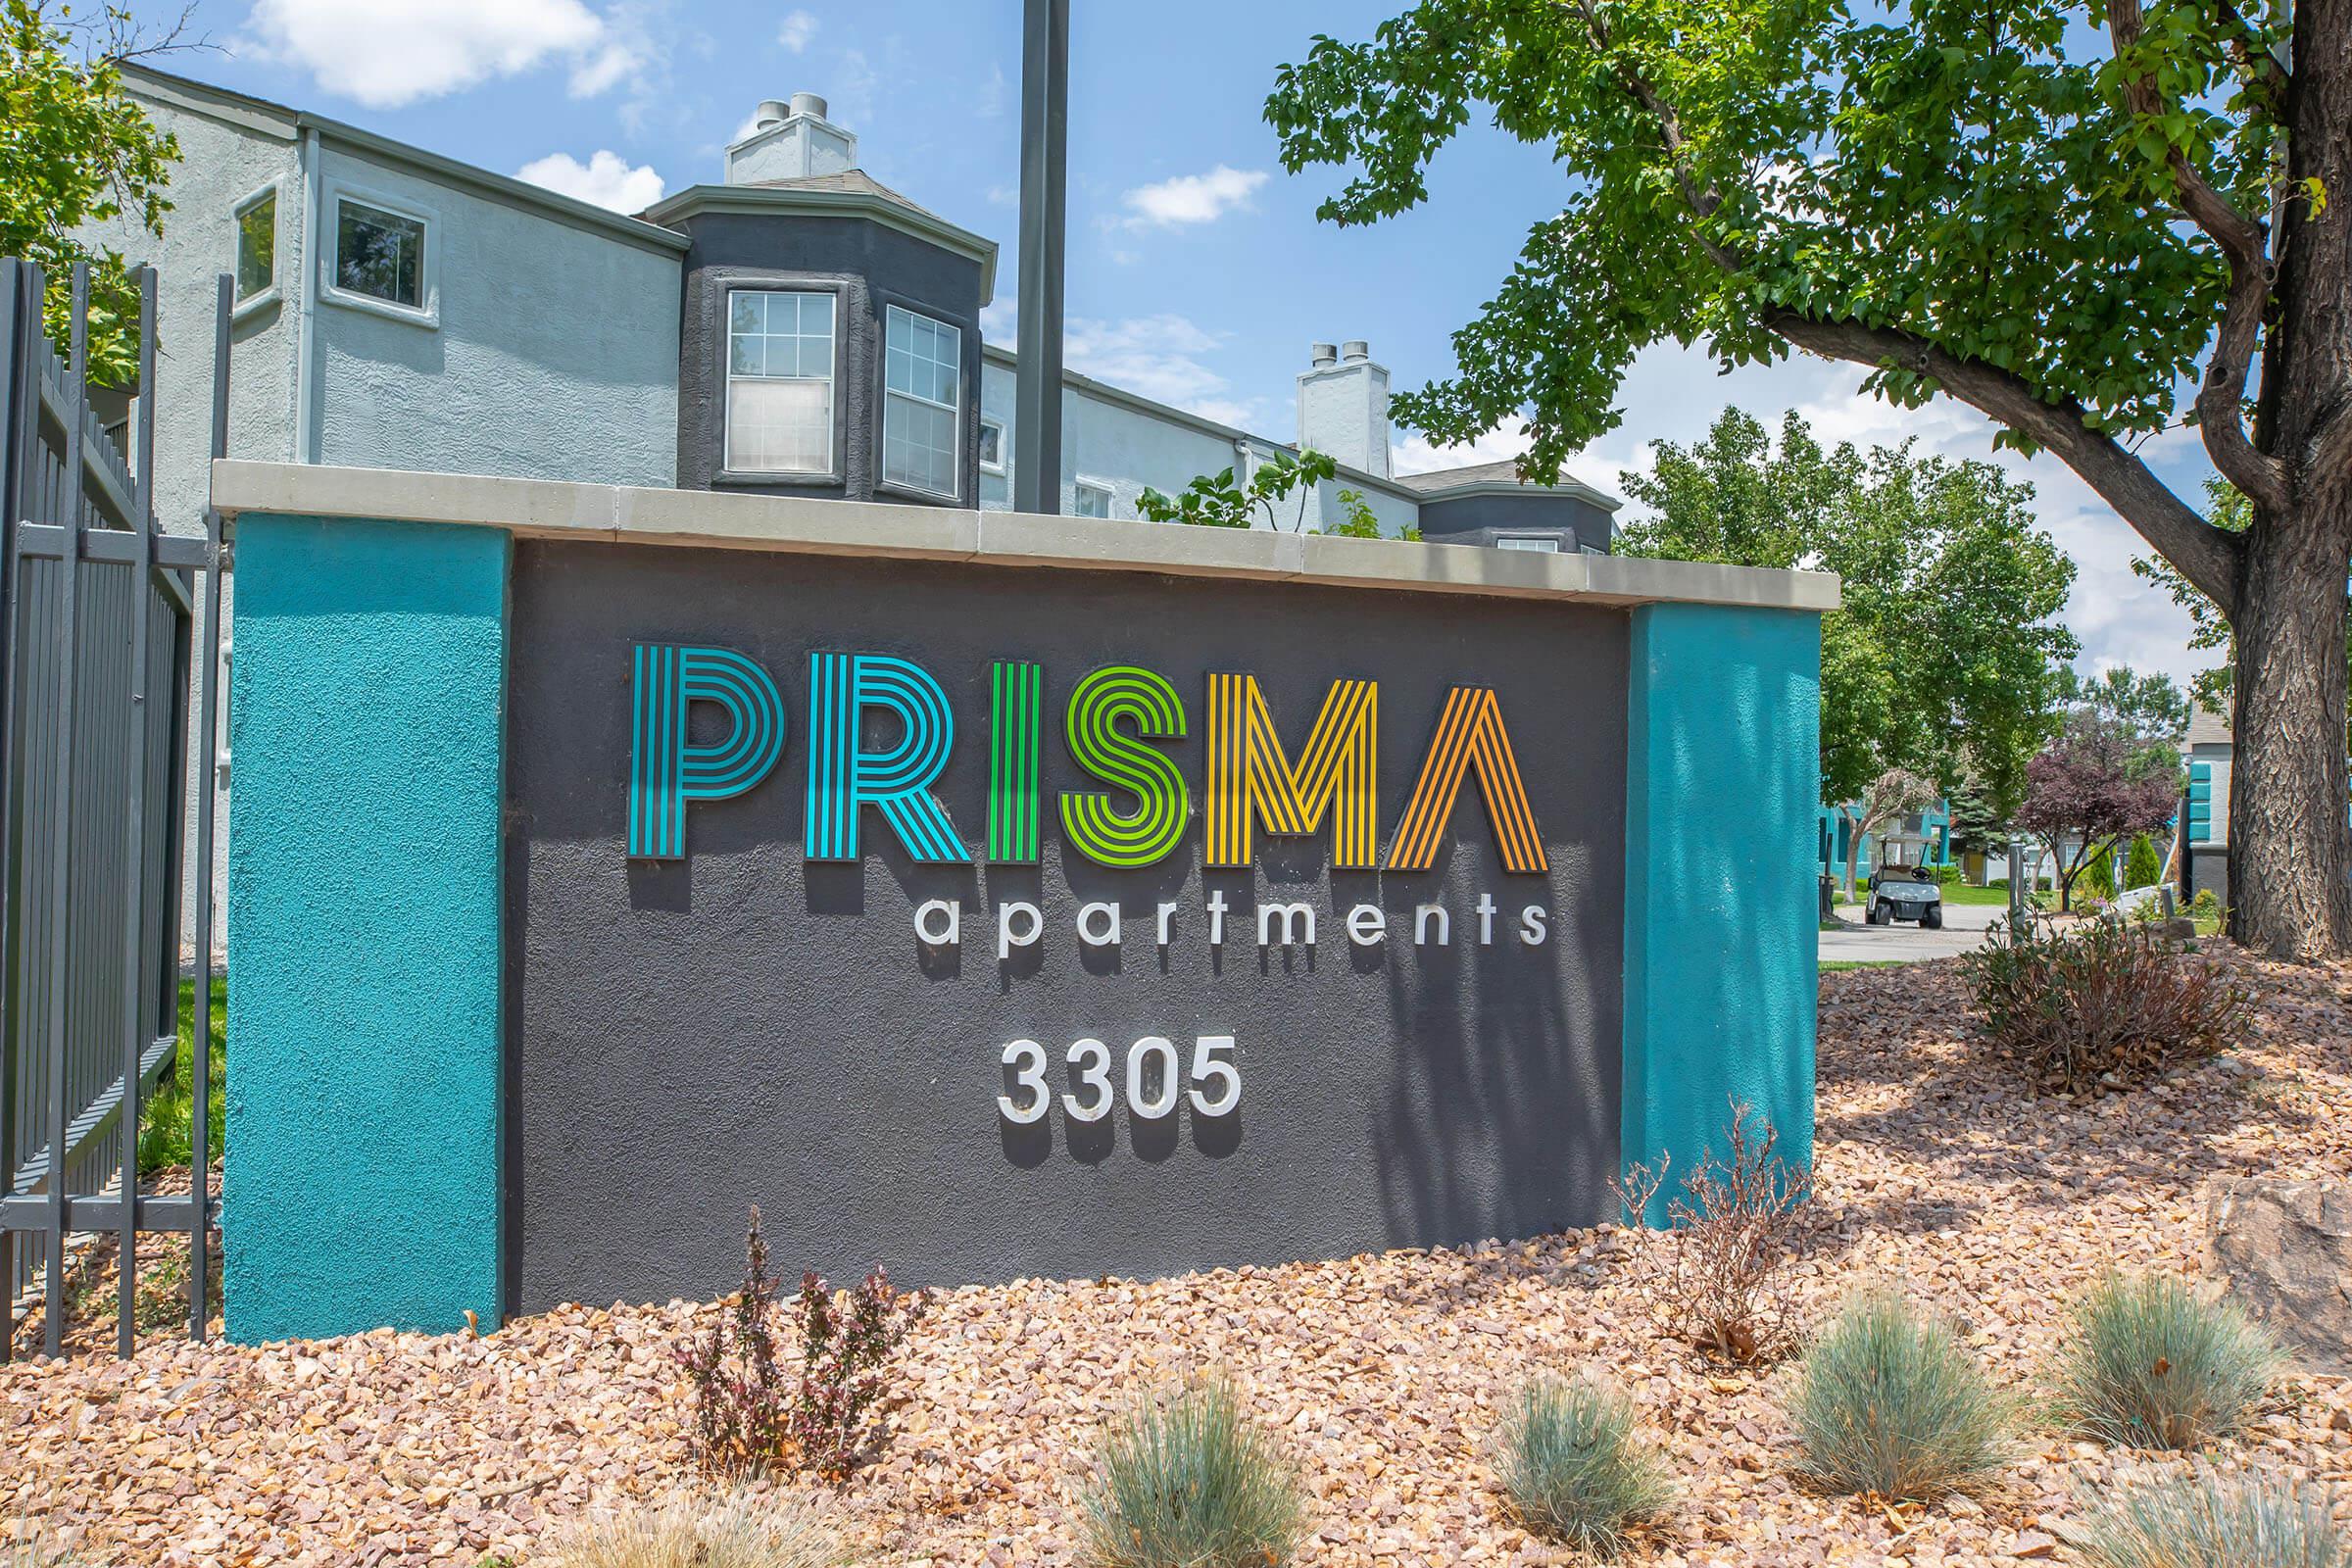 Prisma Apartments Exterior  - Prisma Apartments - Albuquerque - New Mexico